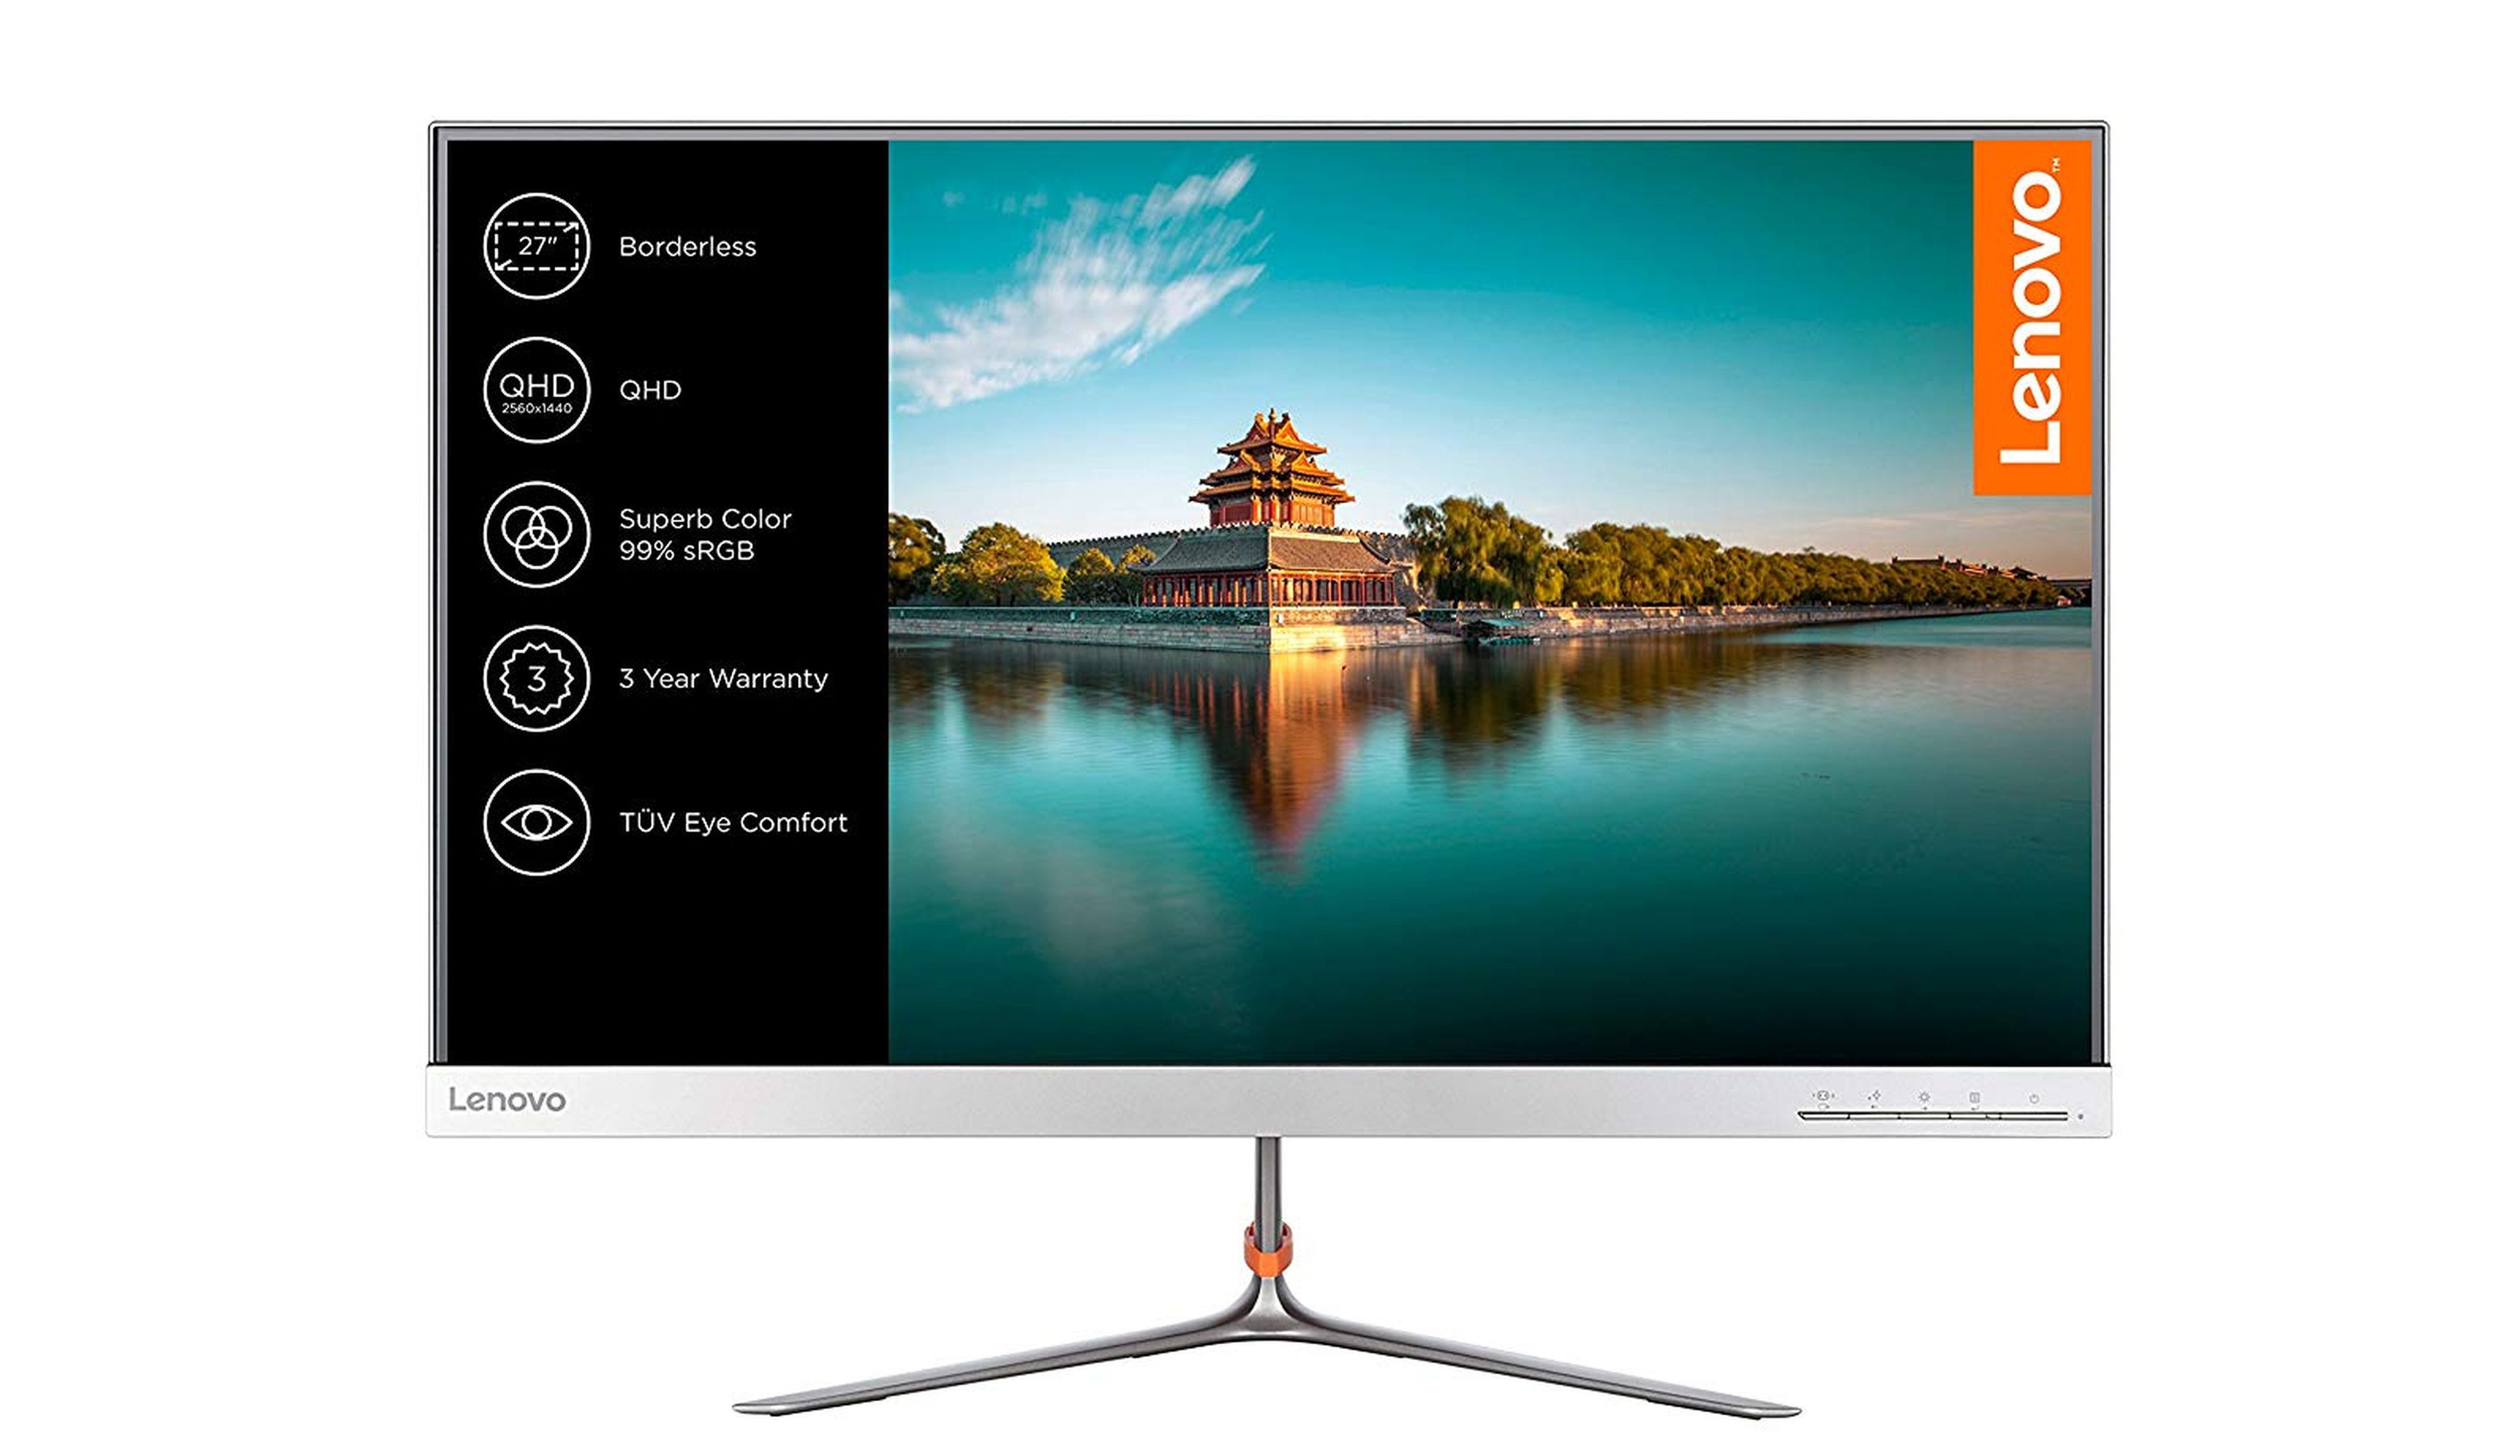 Oferta : Monitor de Lenovo QHD de 27 pulgadas